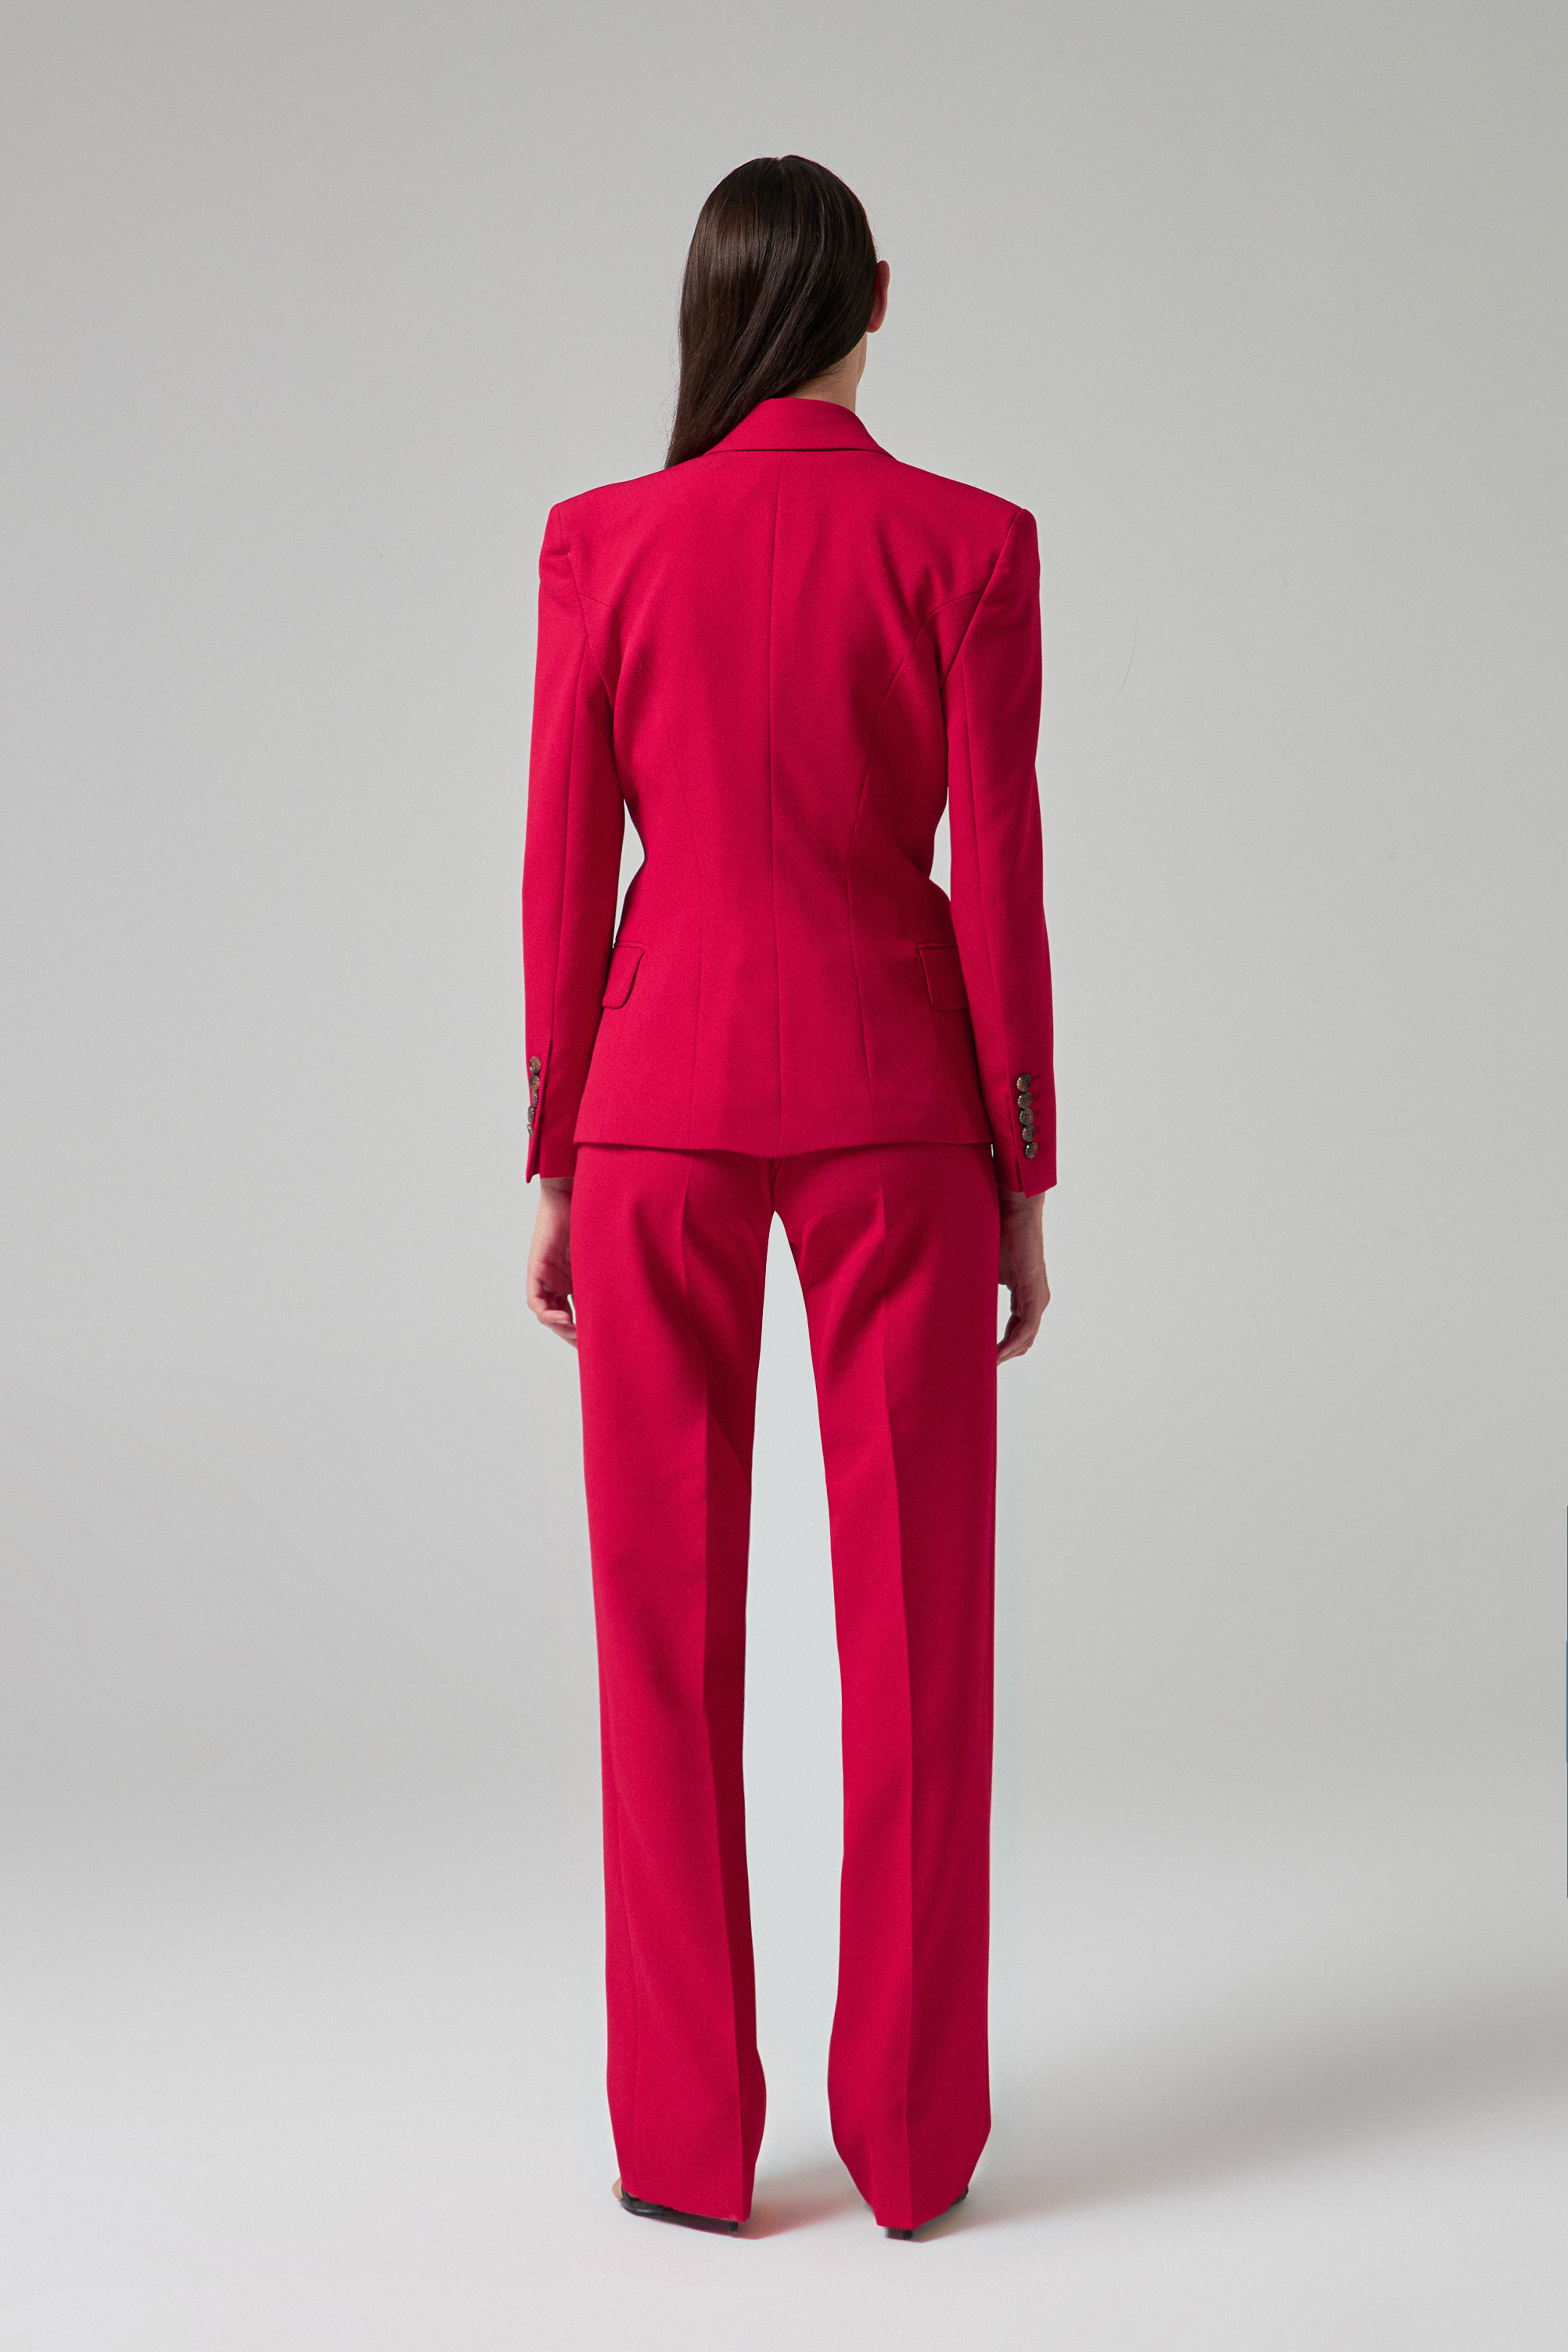 Damat Tween Damat Slim Fit Kırmızı Takim Elbise Yelekli. 4